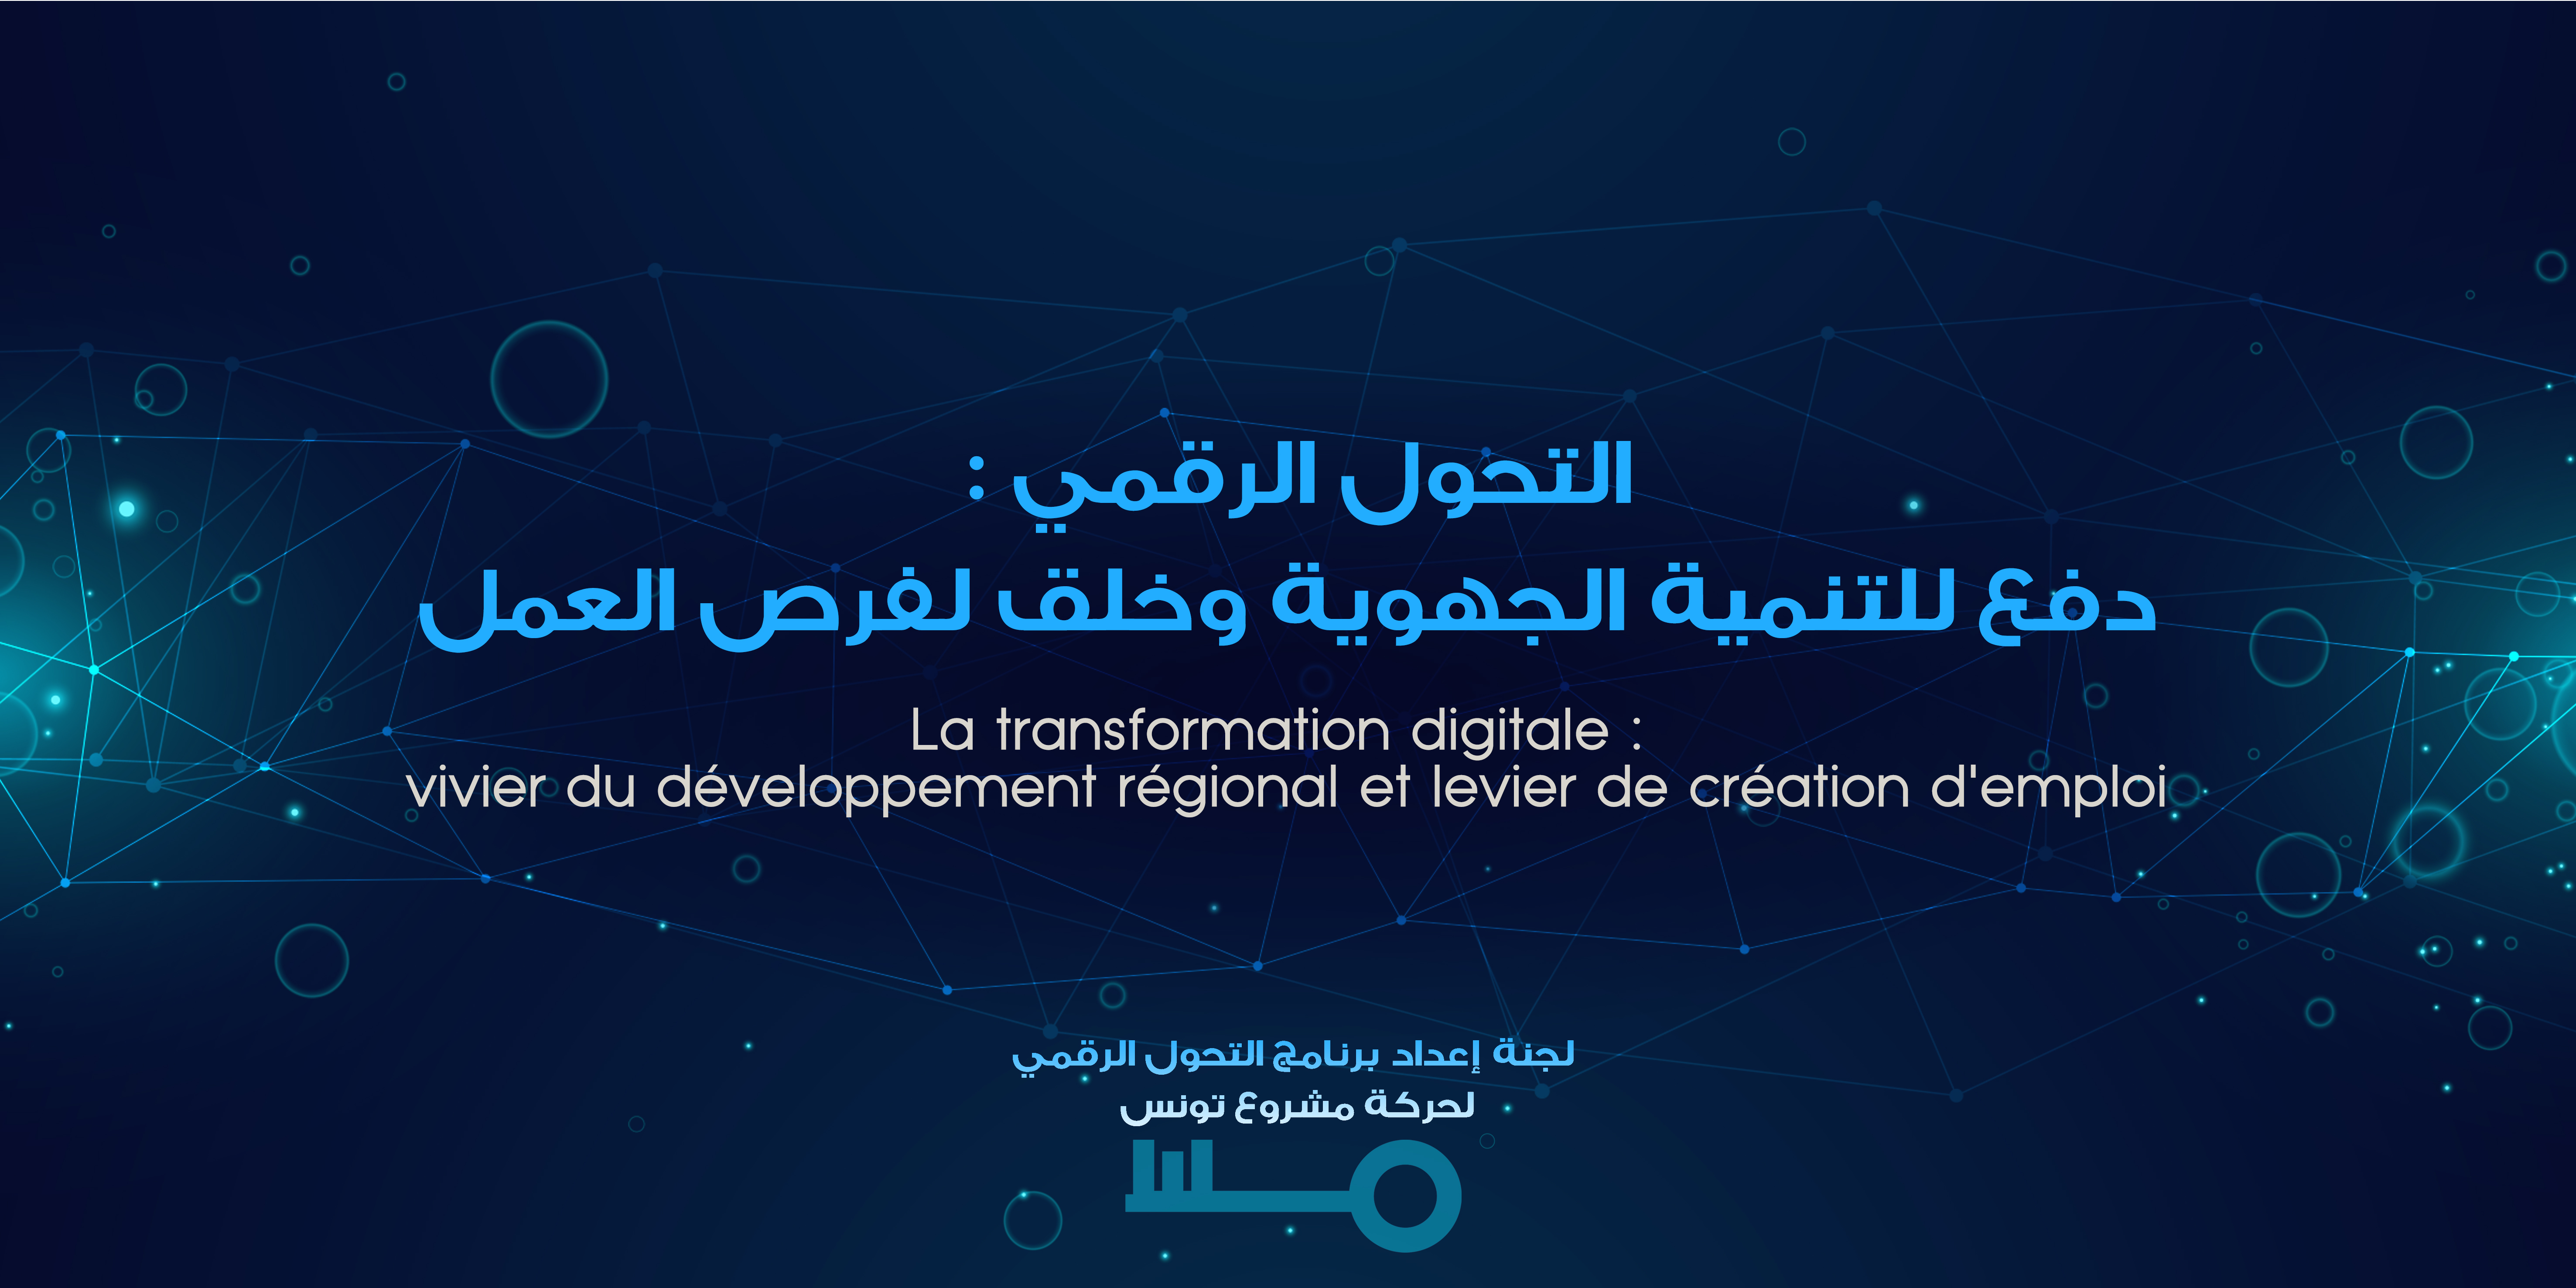 حركة مشروع تونس: التحول الرقمي، دفع للتنمية الجهوية وخلق لفرص العمل